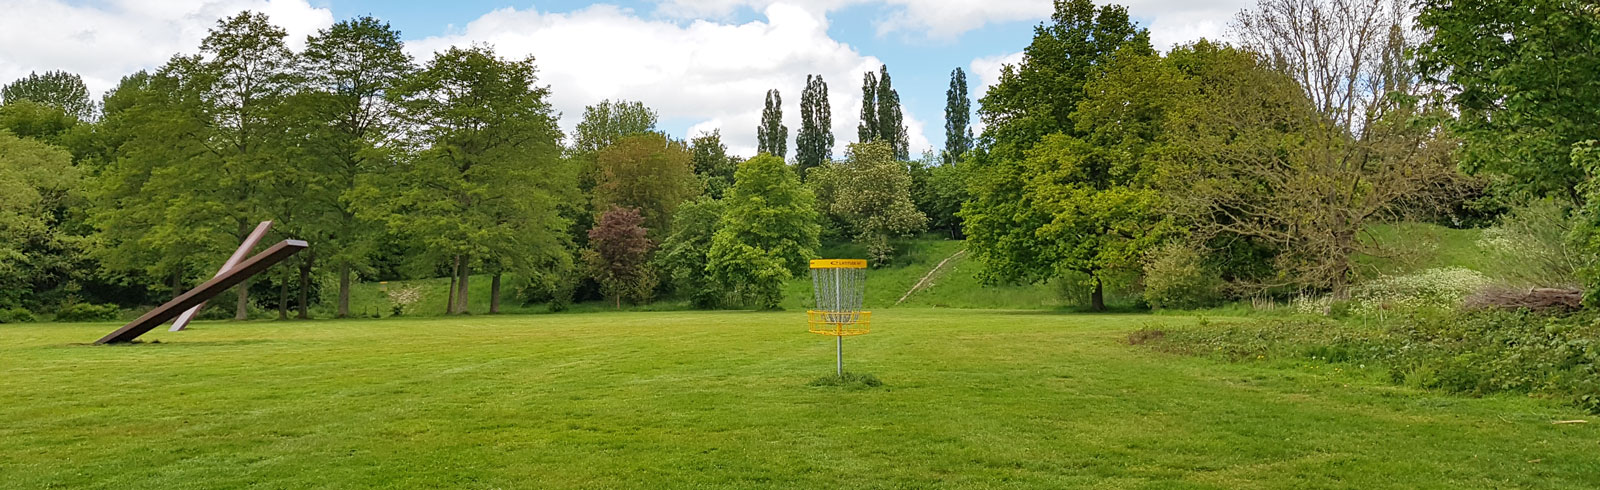 Foto stadspark disc golf baan